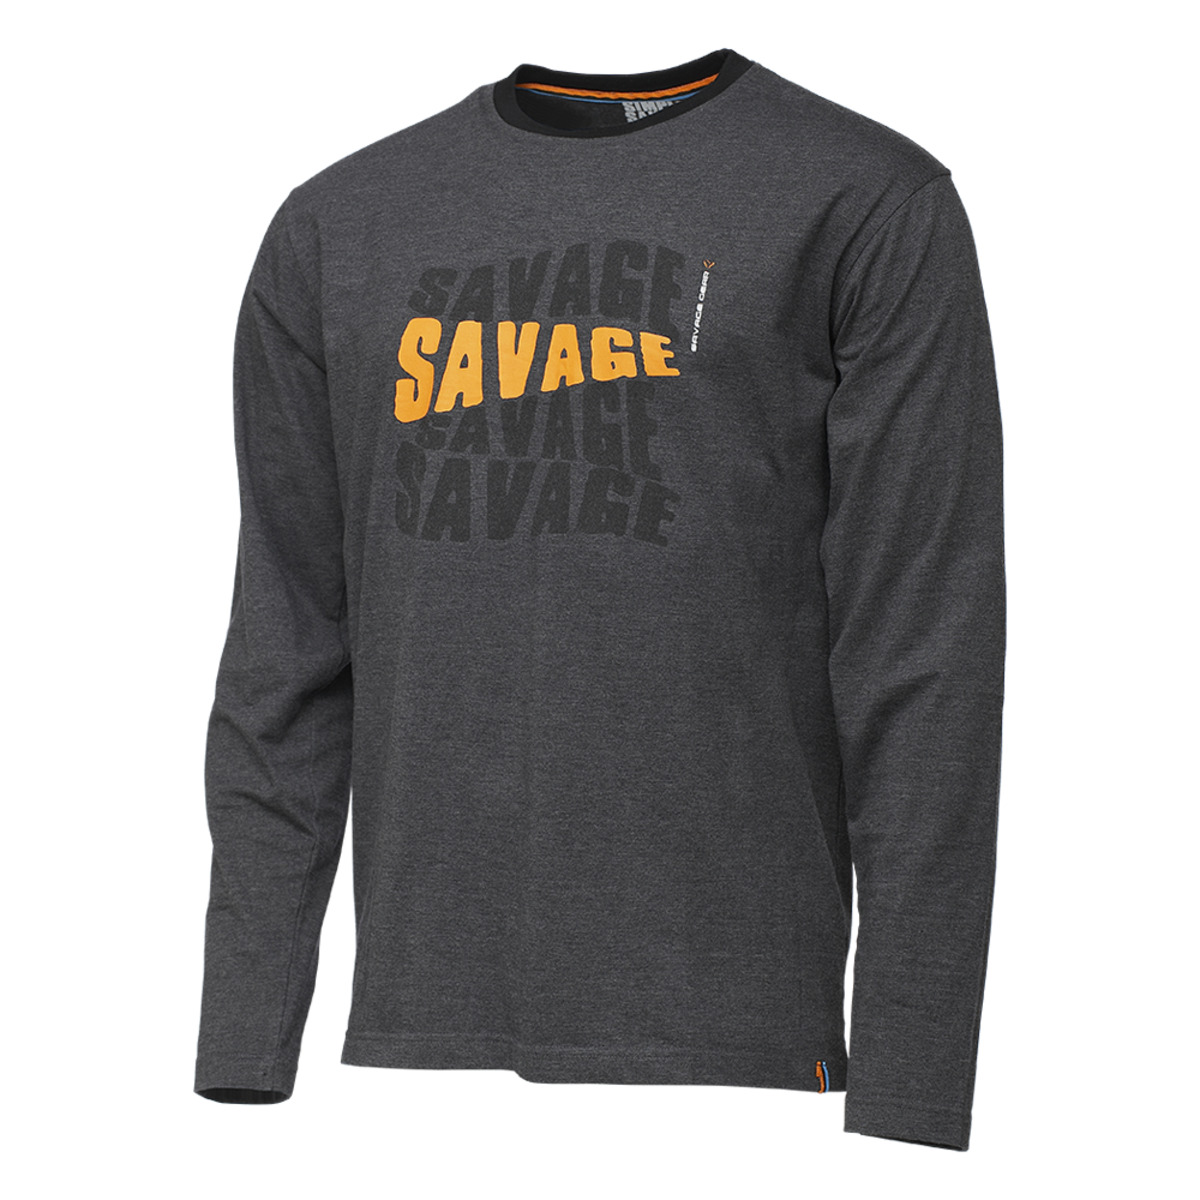 Savage Gear Simply Savage Logo Tee Long Sleeve - M DARK GREY MELANGE